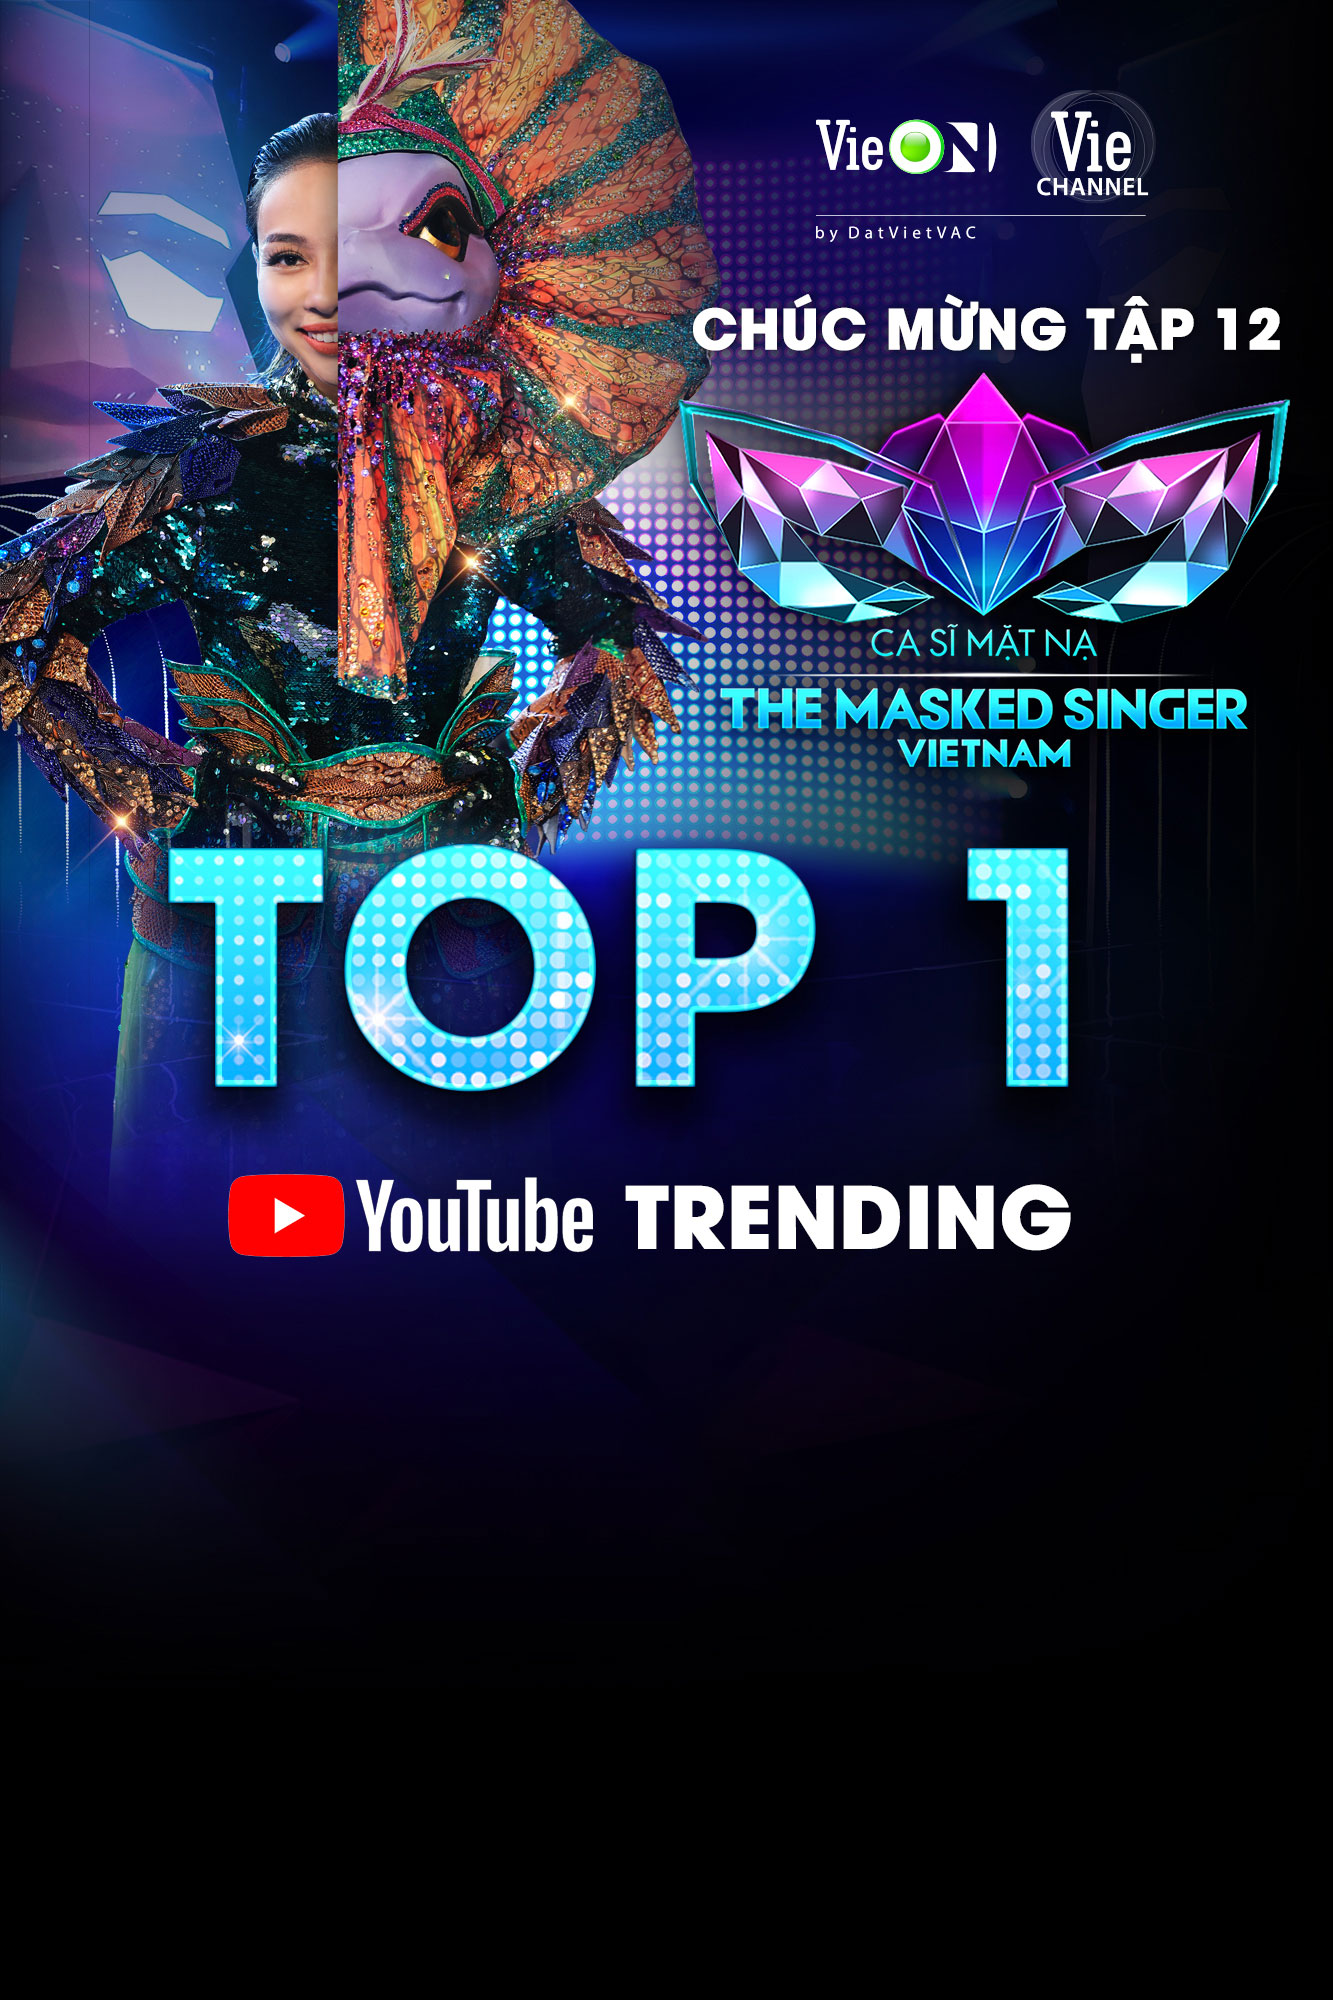 Tập 12 The Masked Singer Vietnam đạt Top 1 Trending Youtube thần tốc-3